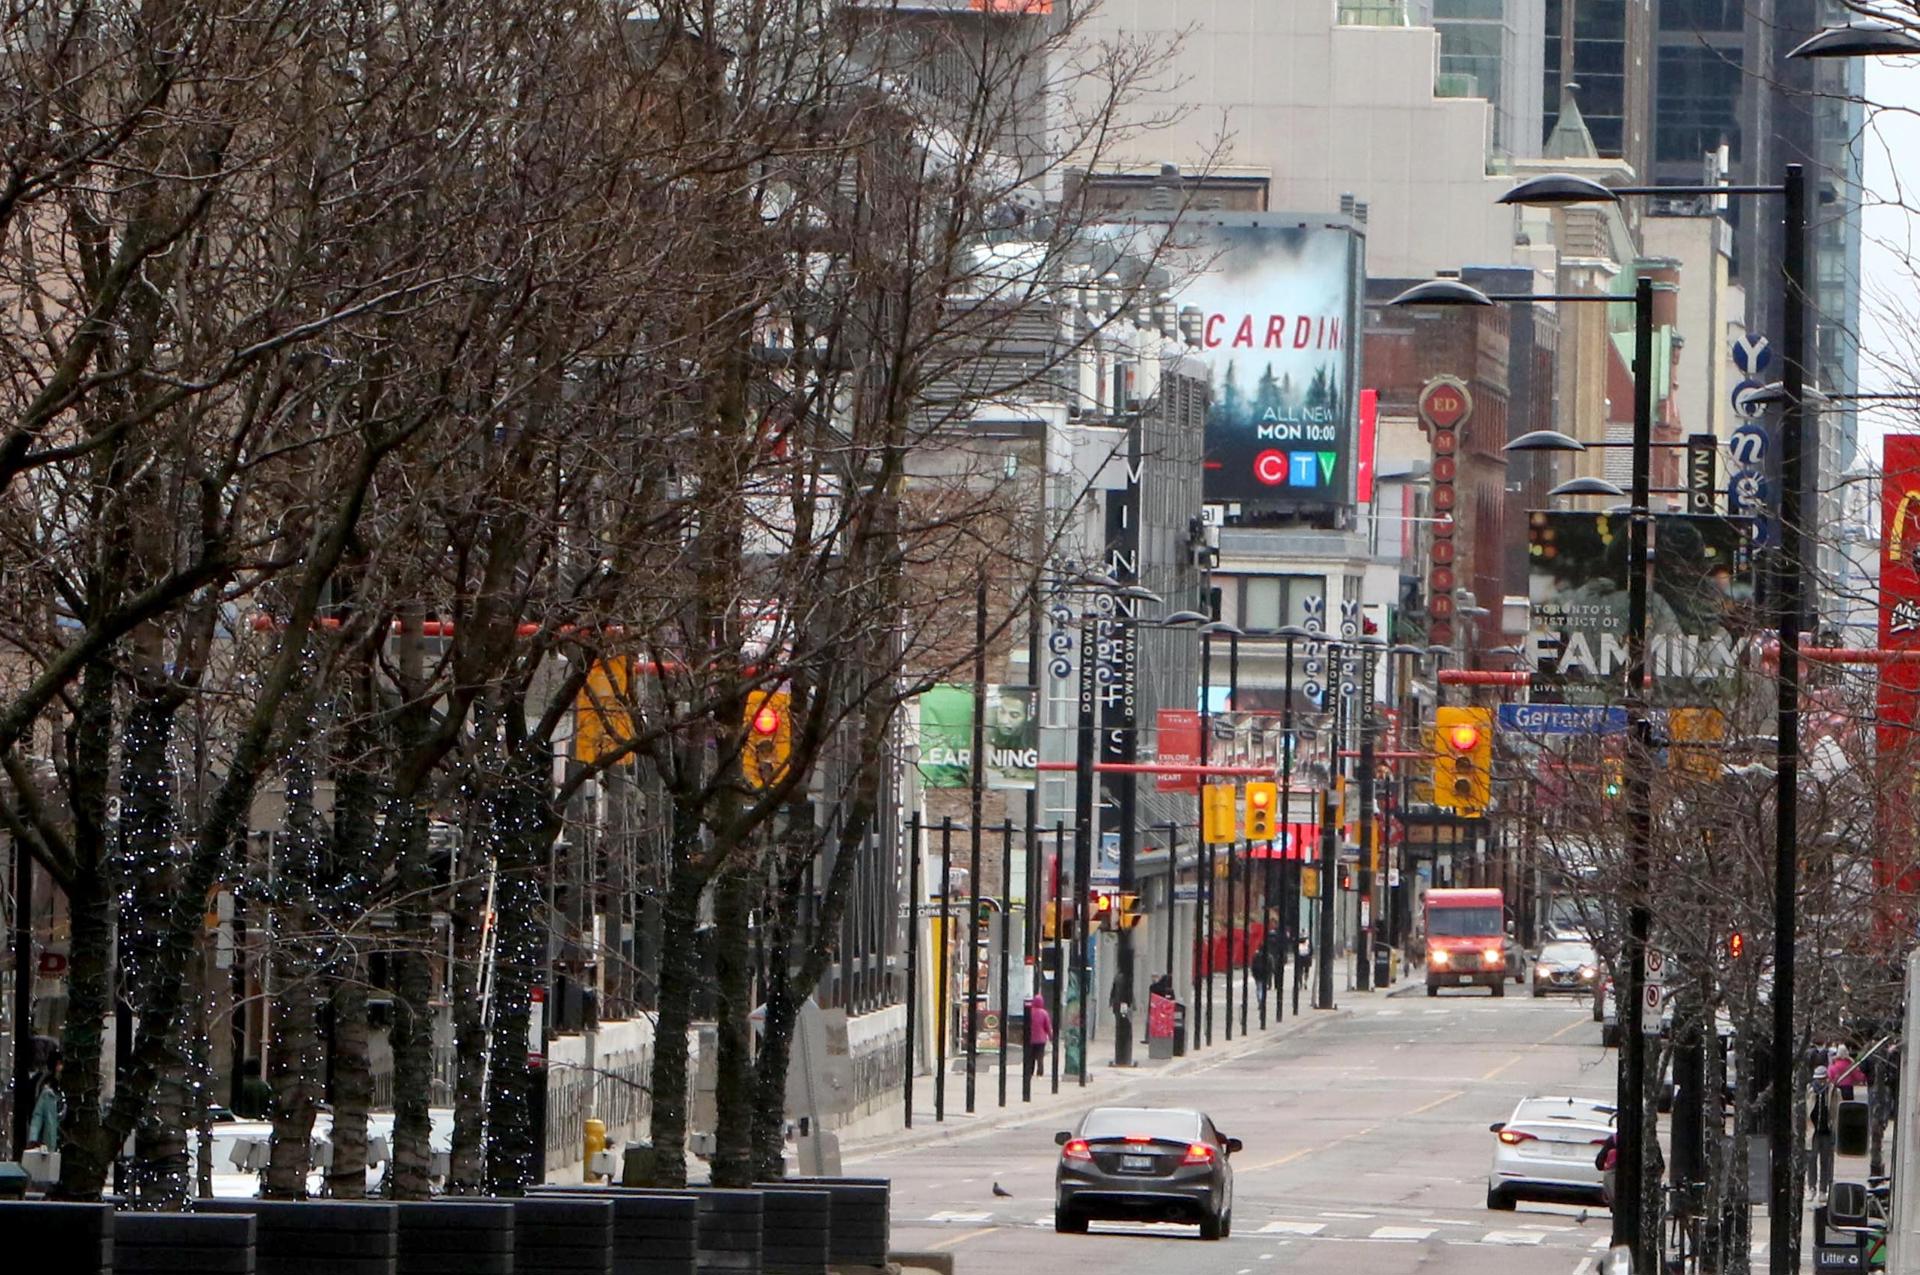 Vista de una calle totalmente en el centro de la ciudad de Toronto, en una fotografía de archivo. EFE/Osvaldo Ponce